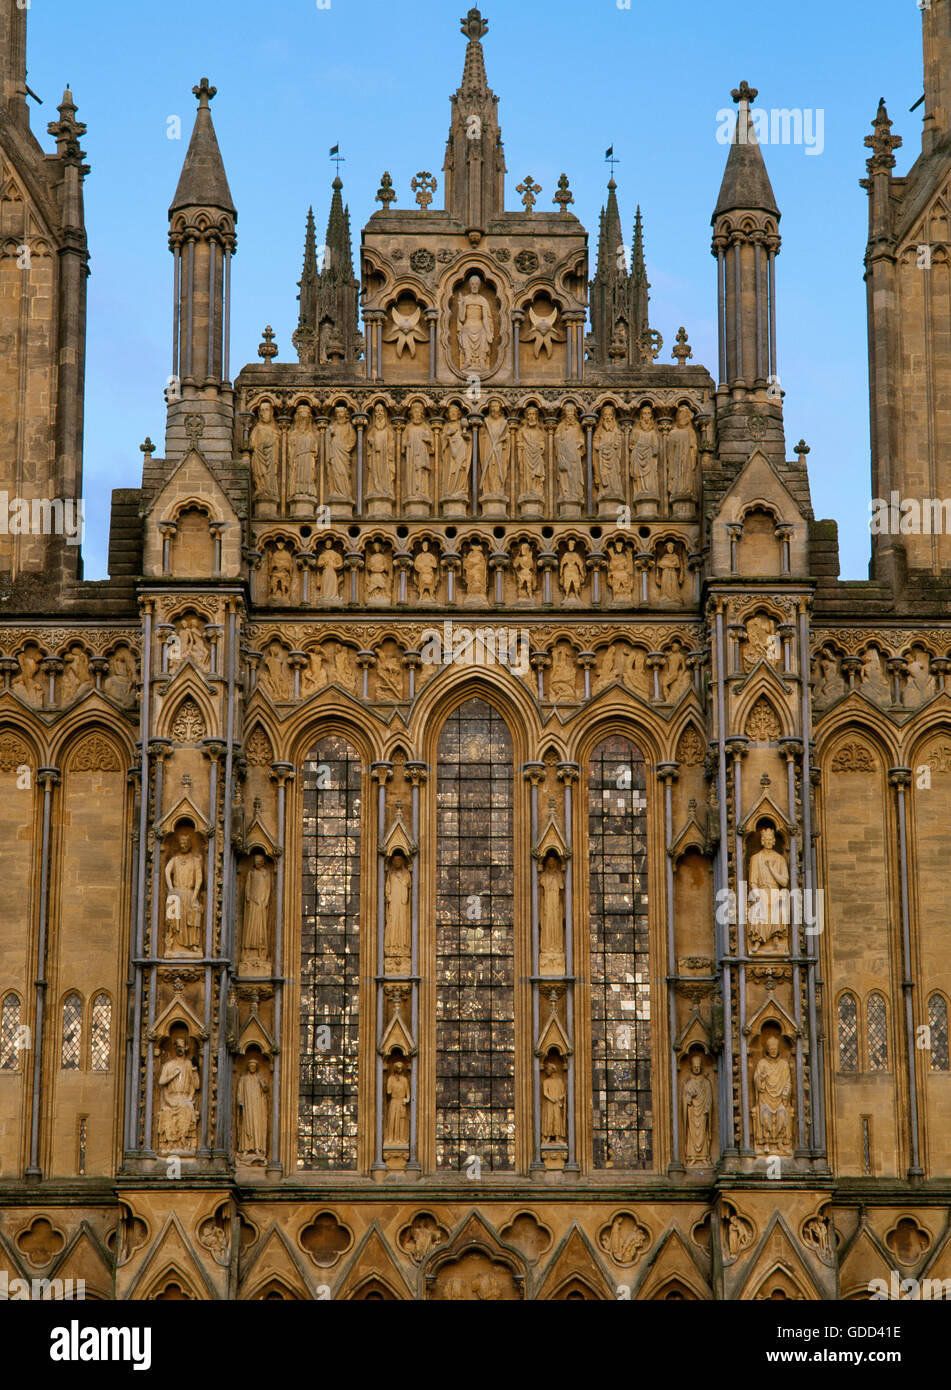 Dettaglio del pannello superiore della porzione centrale della facciata ovest della Cattedrale di Wells (Sant'Andrea Chiesa), Somerset, iniziato c 1230. Foto Stock